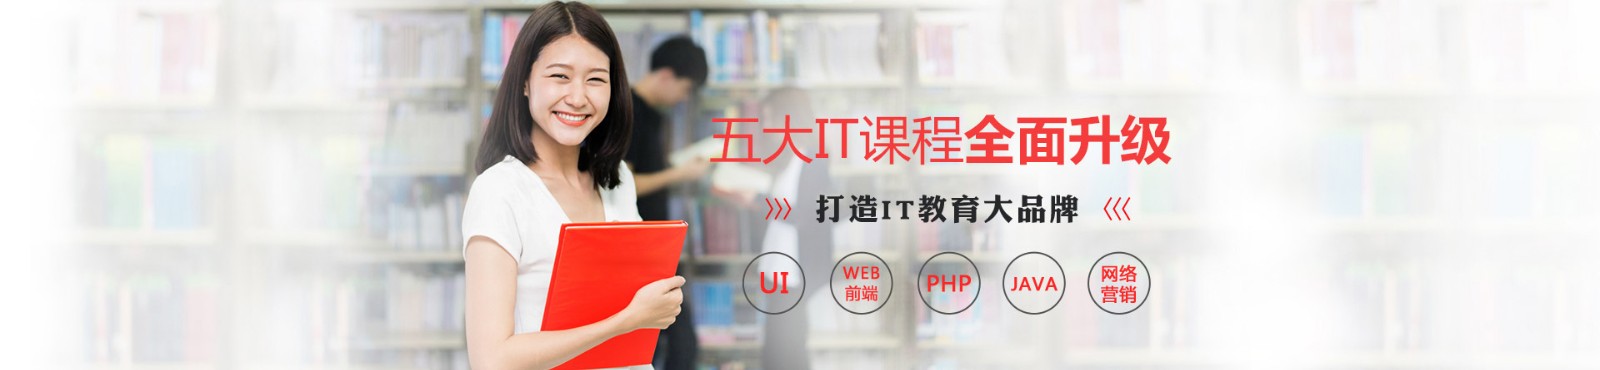 郑州黑马IT培训机构 横幅广告